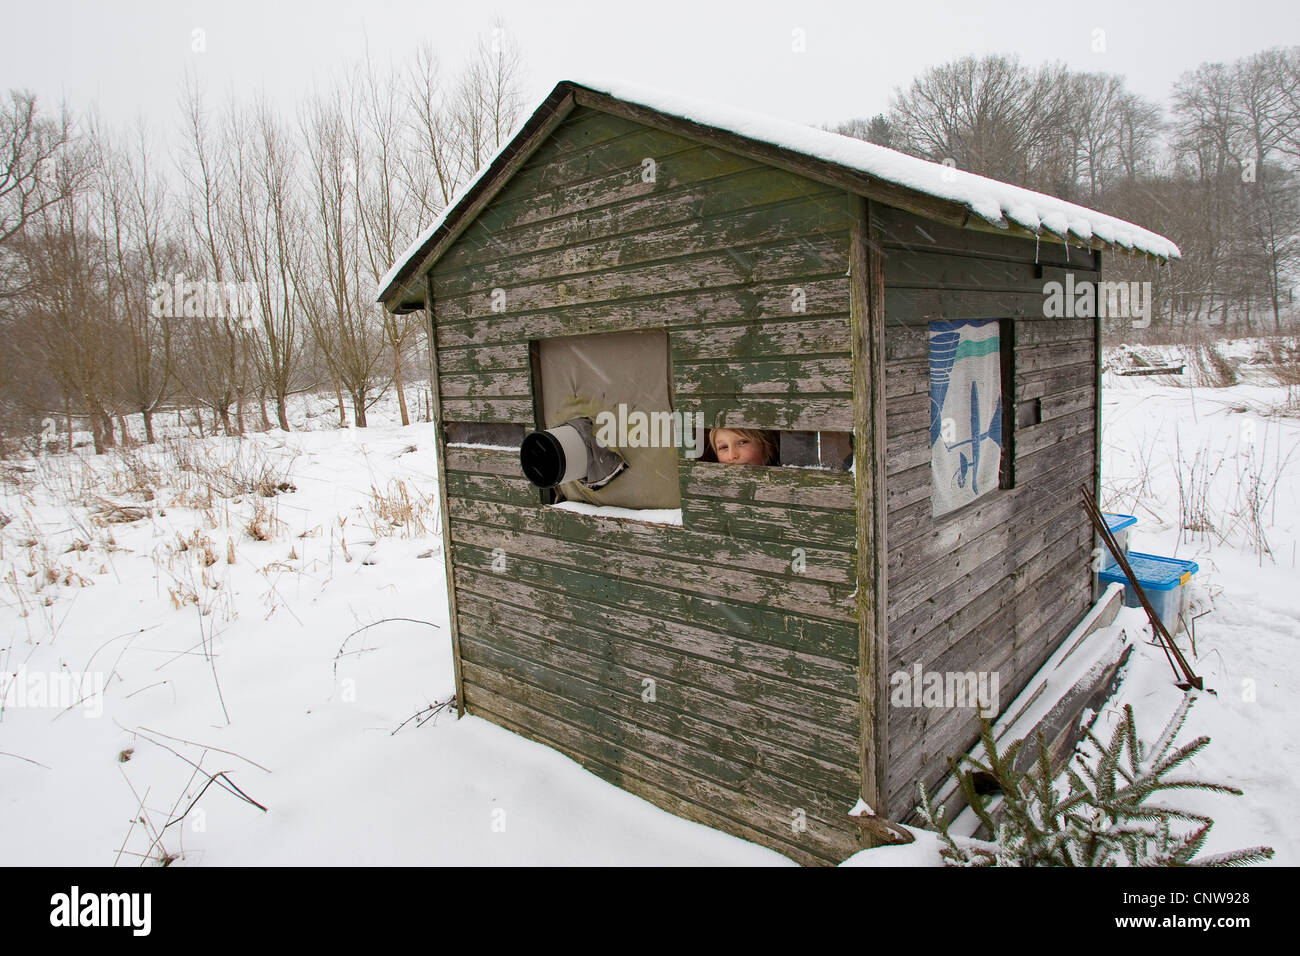 Garçon de prendre des photos à une cabane camouflage lieu d'alimentation d'hiver, Allemagne Banque D'Images